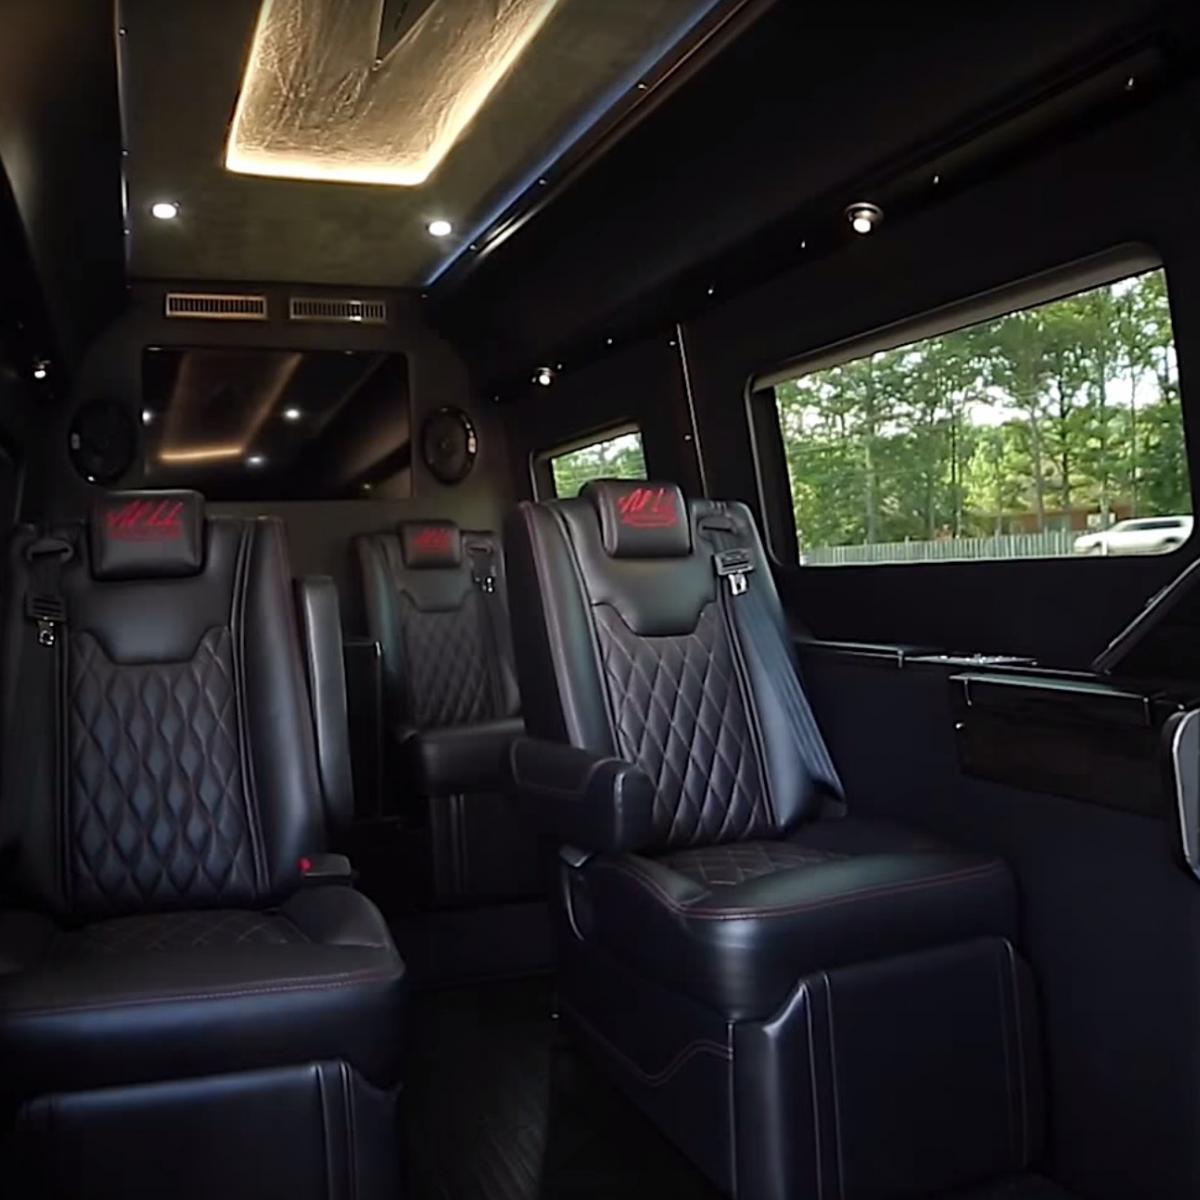 Nick Saban Releasing His Own Luxury Line of Mercedes-Benz Vans | News